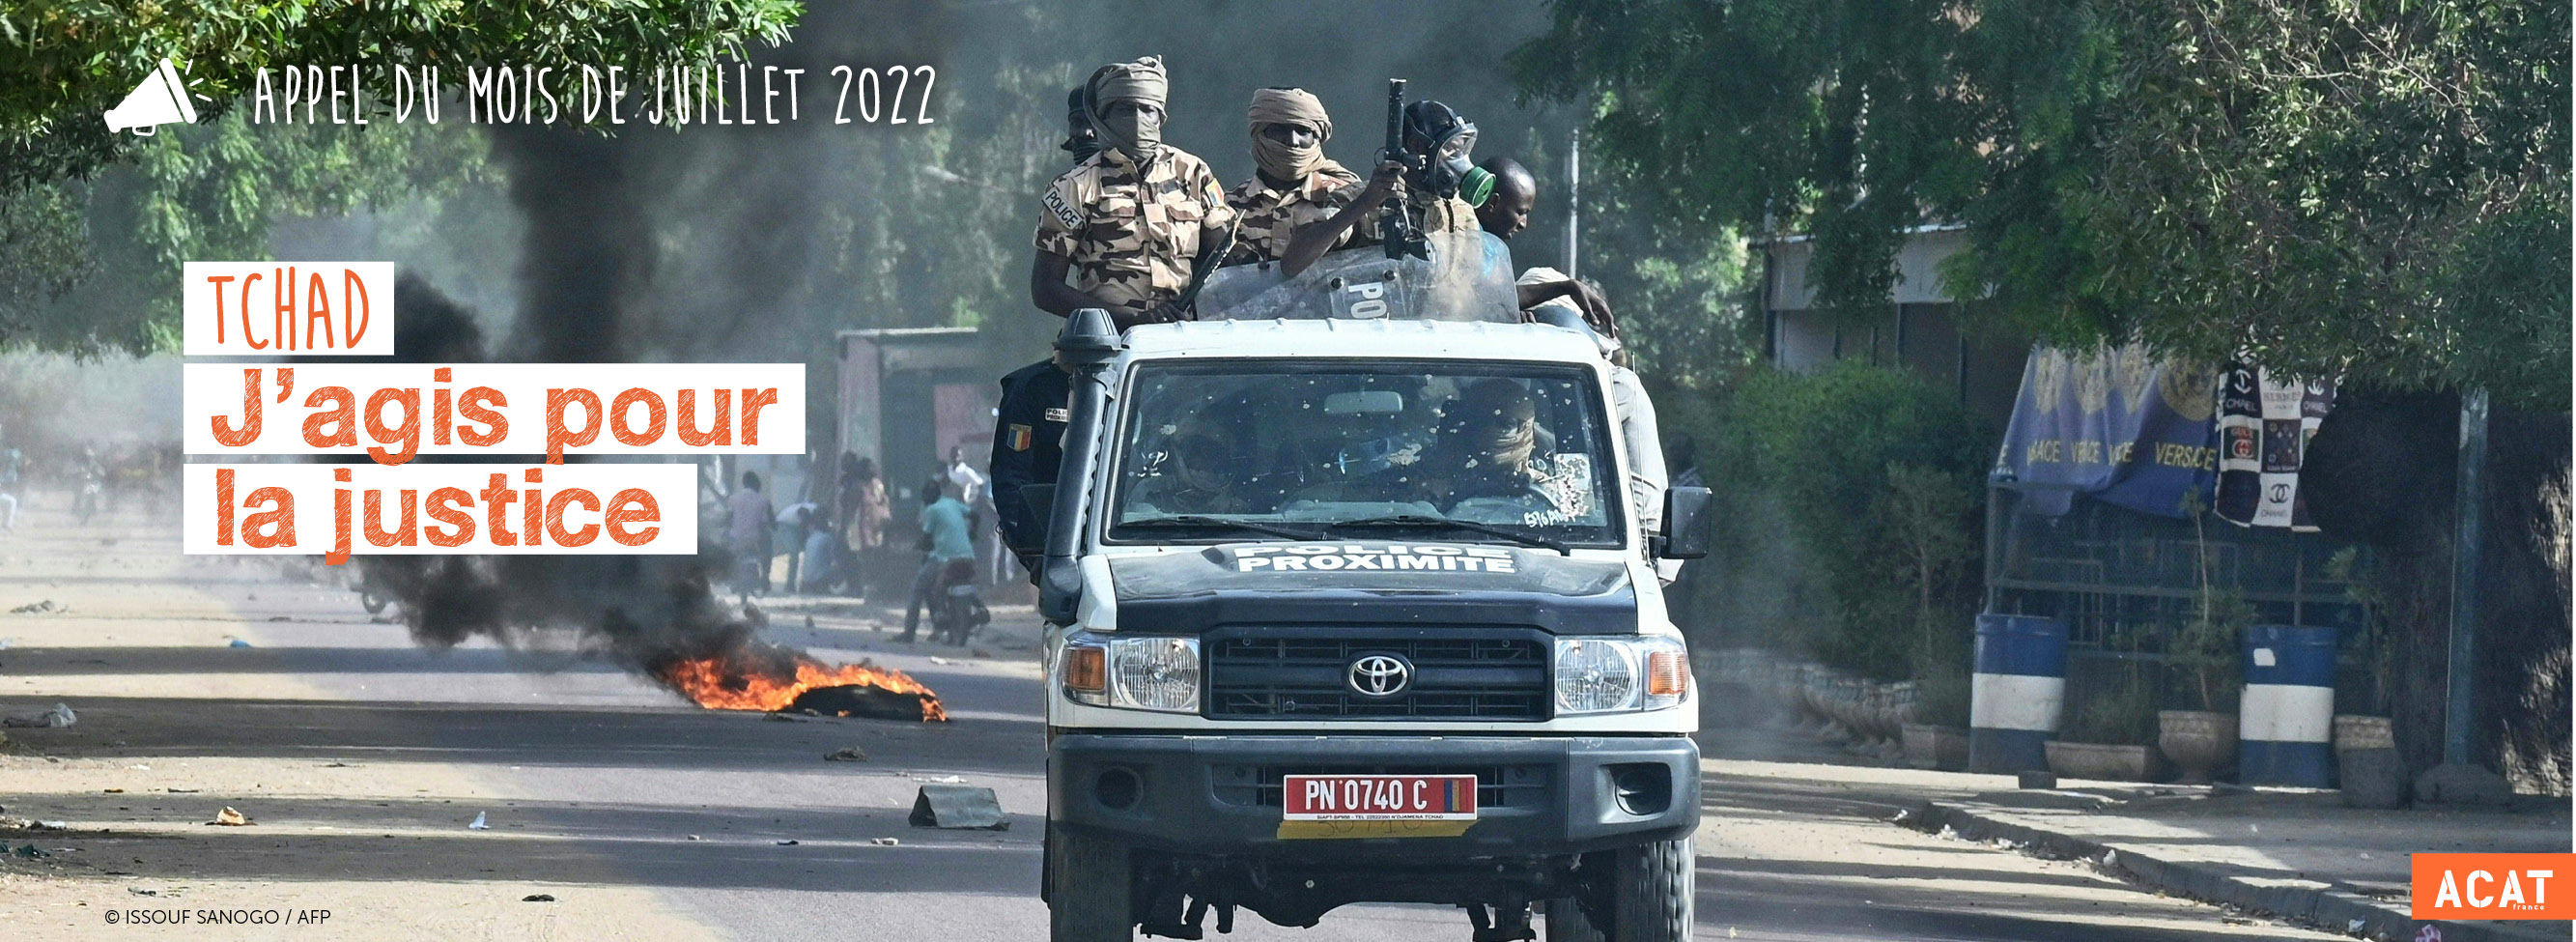 AM juillet 2022_Tchad_J'agis pour la justice